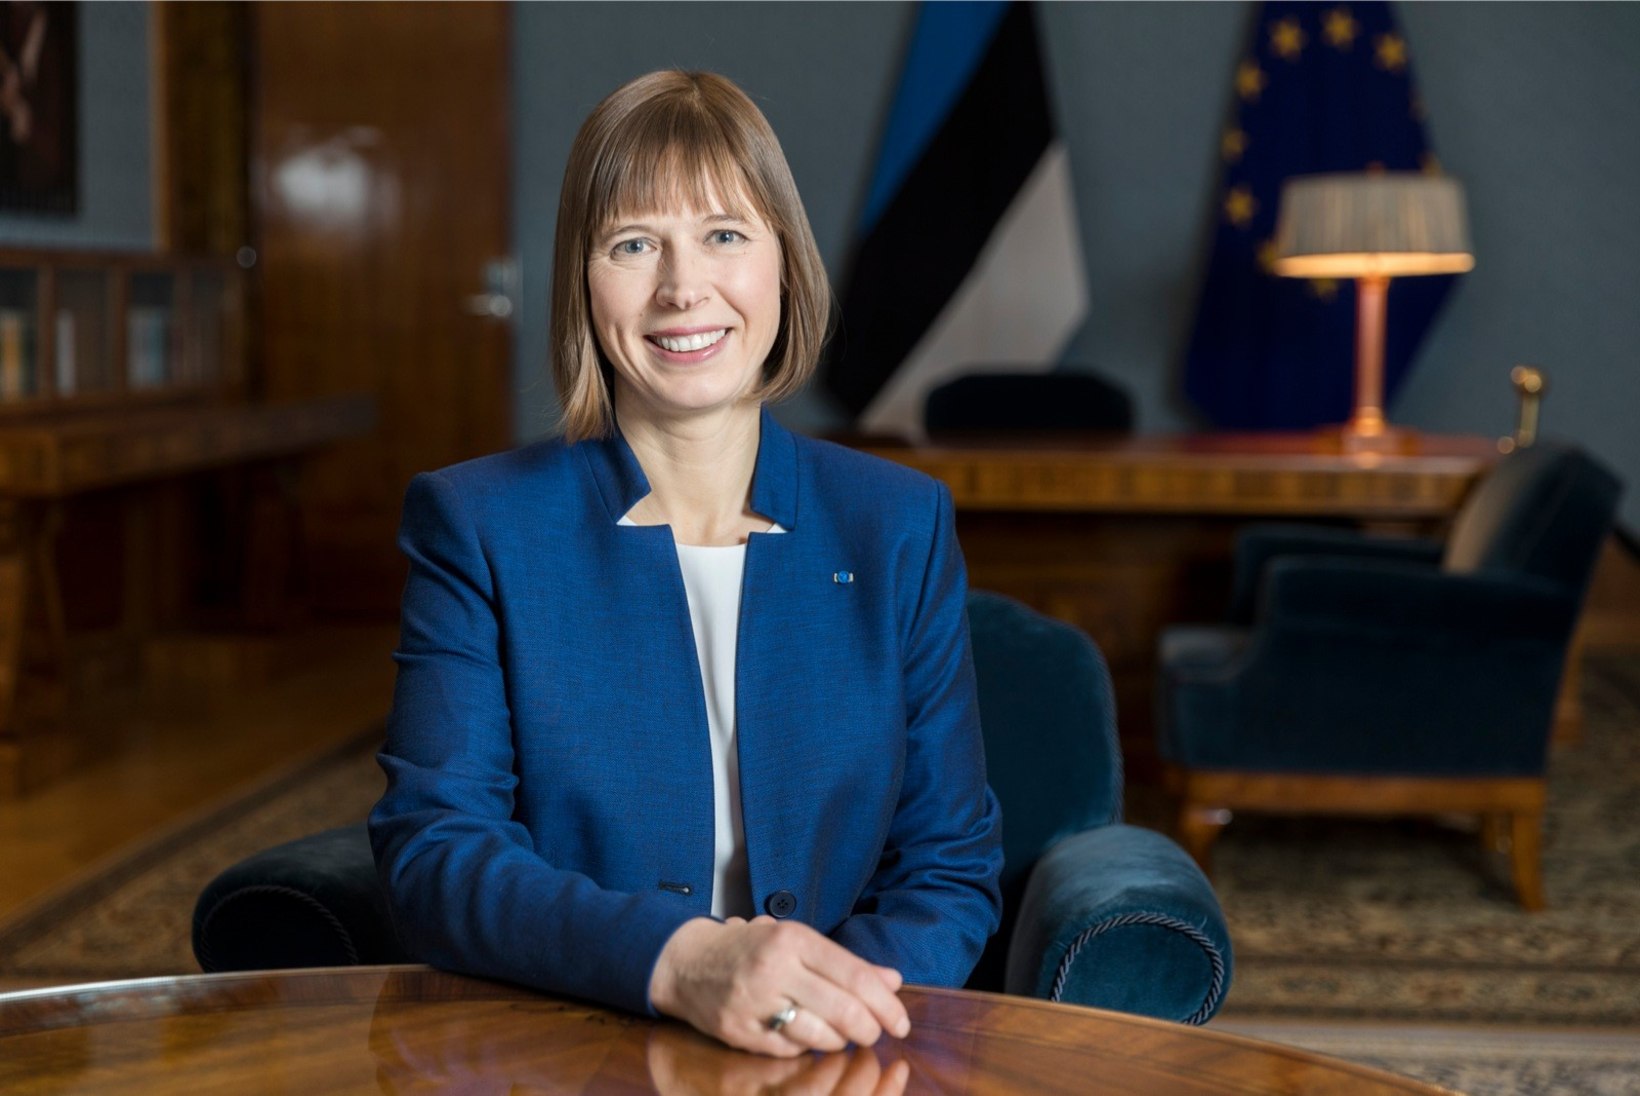 Presidendi kantselei direktor selgitab Kaljulaidi puhkust: "Eks igaüks meist peab puhkama, nii ka riigipea!"